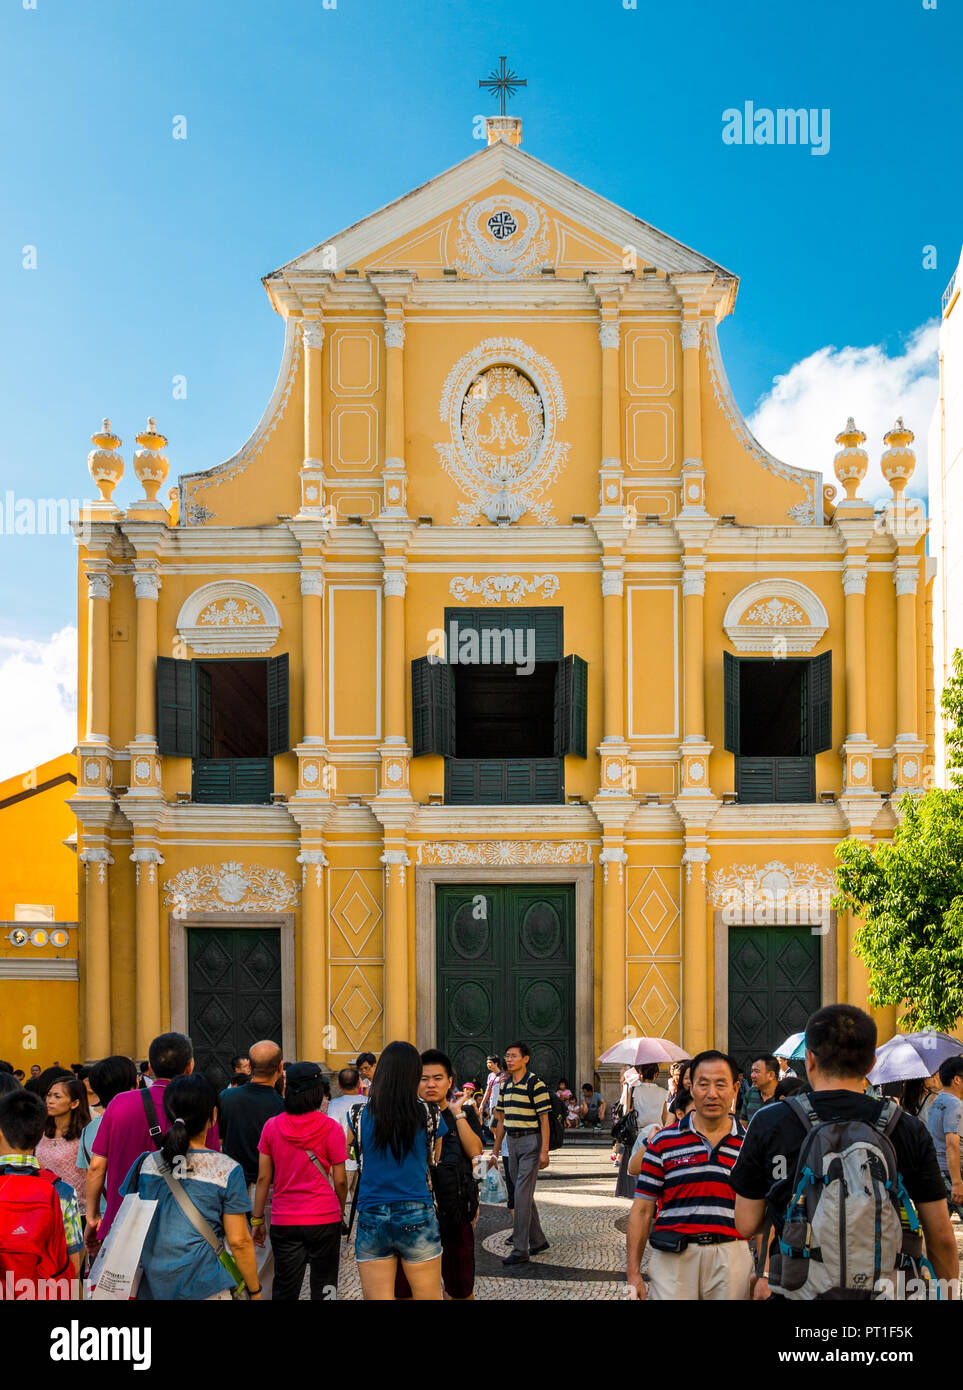 Macau, China - Juli 11, 2014: Viele Touristen stehen vor dem berühmten St. Dominic's Kirche, einer späten 16. Jahrhundert im Stil des Barock Kirche... Stockfoto